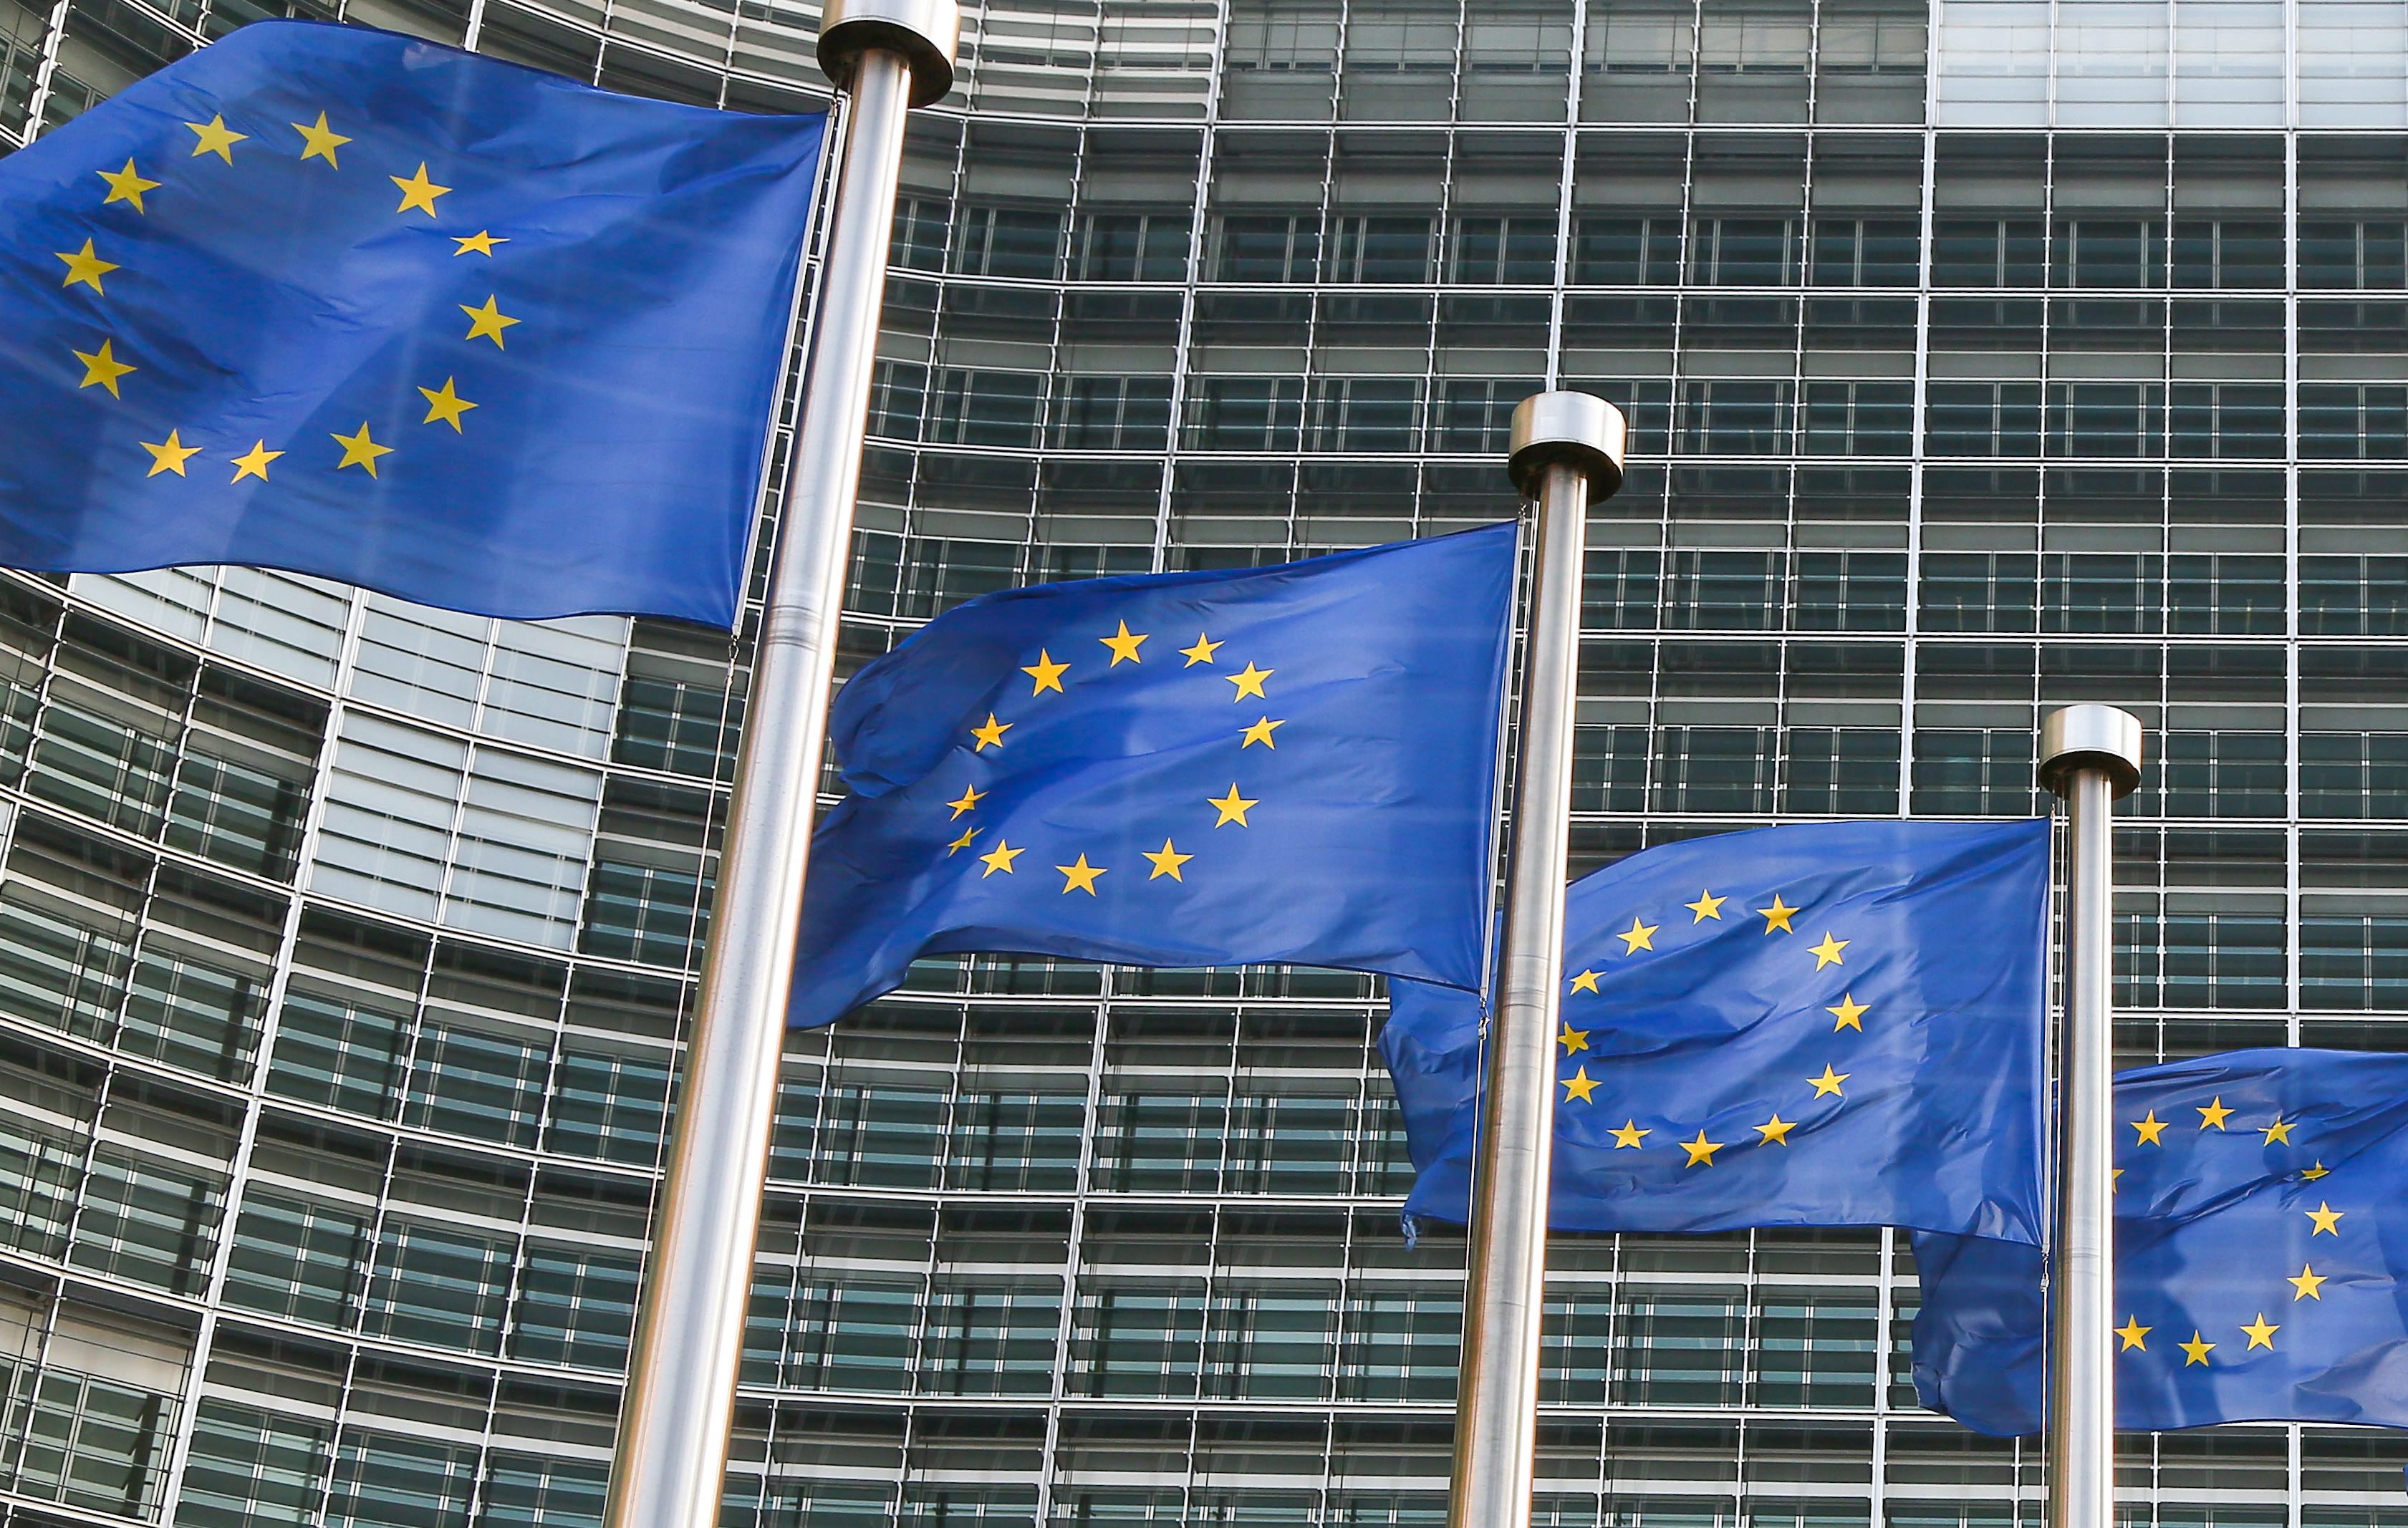 Πρώτη πολιτική δύναμη αναδεικνύεται το ΕΛΚ στις ευρωεκλογές